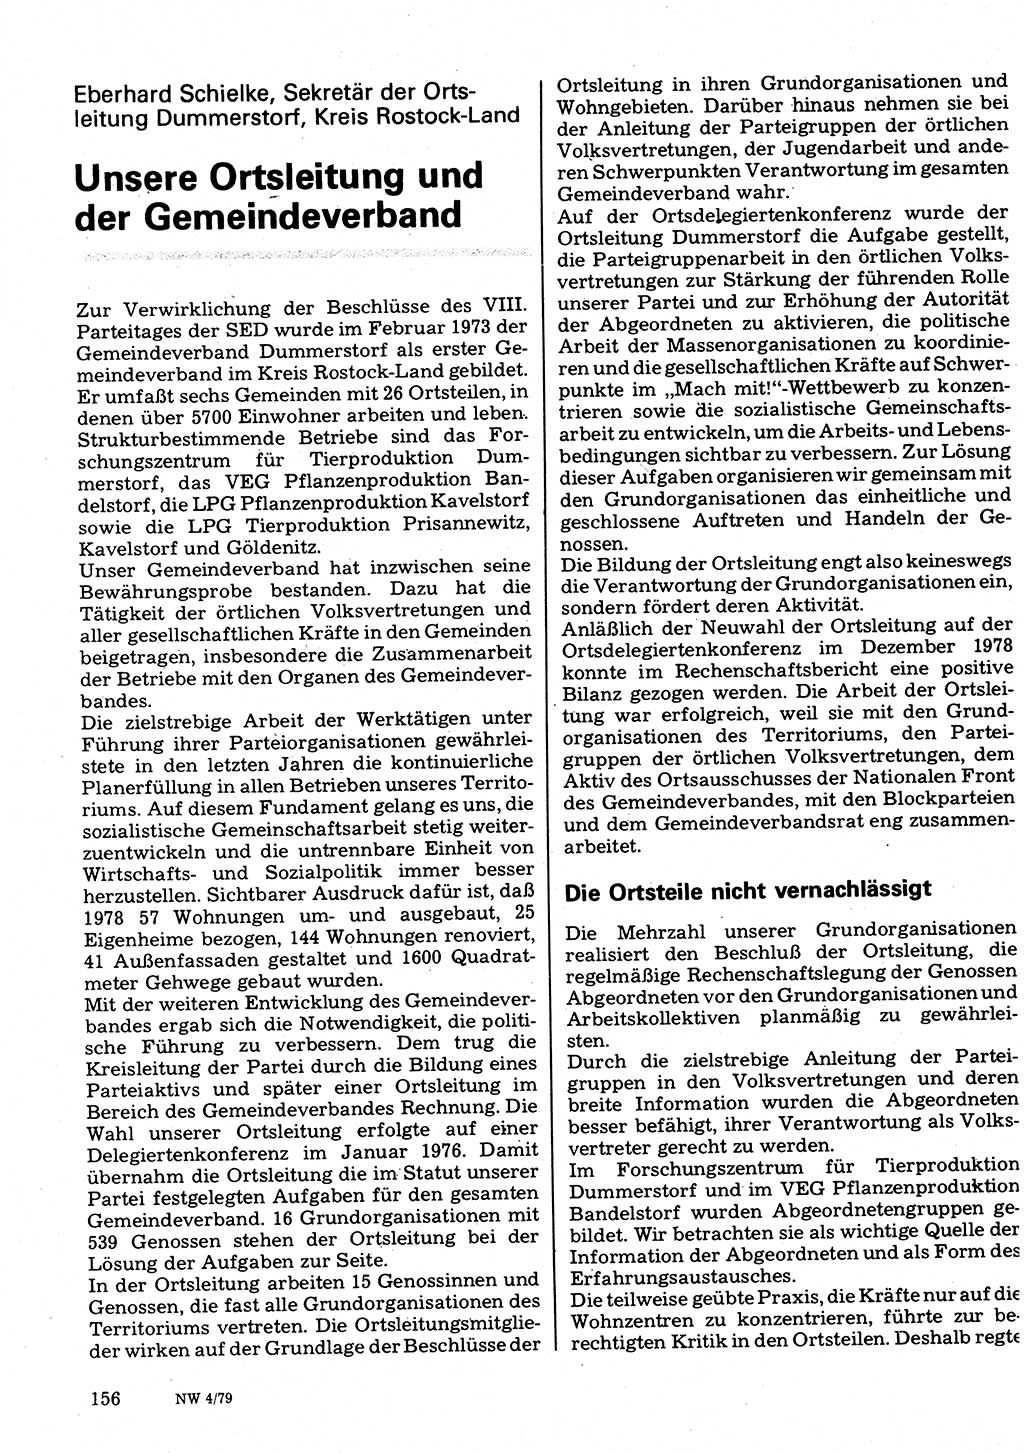 Neuer Weg (NW), Organ des Zentralkomitees (ZK) der SED (Sozialistische Einheitspartei Deutschlands) für Fragen des Parteilebens, 34. Jahrgang [Deutsche Demokratische Republik (DDR)] 1979, Seite 156 (NW ZK SED DDR 1979, S. 156)